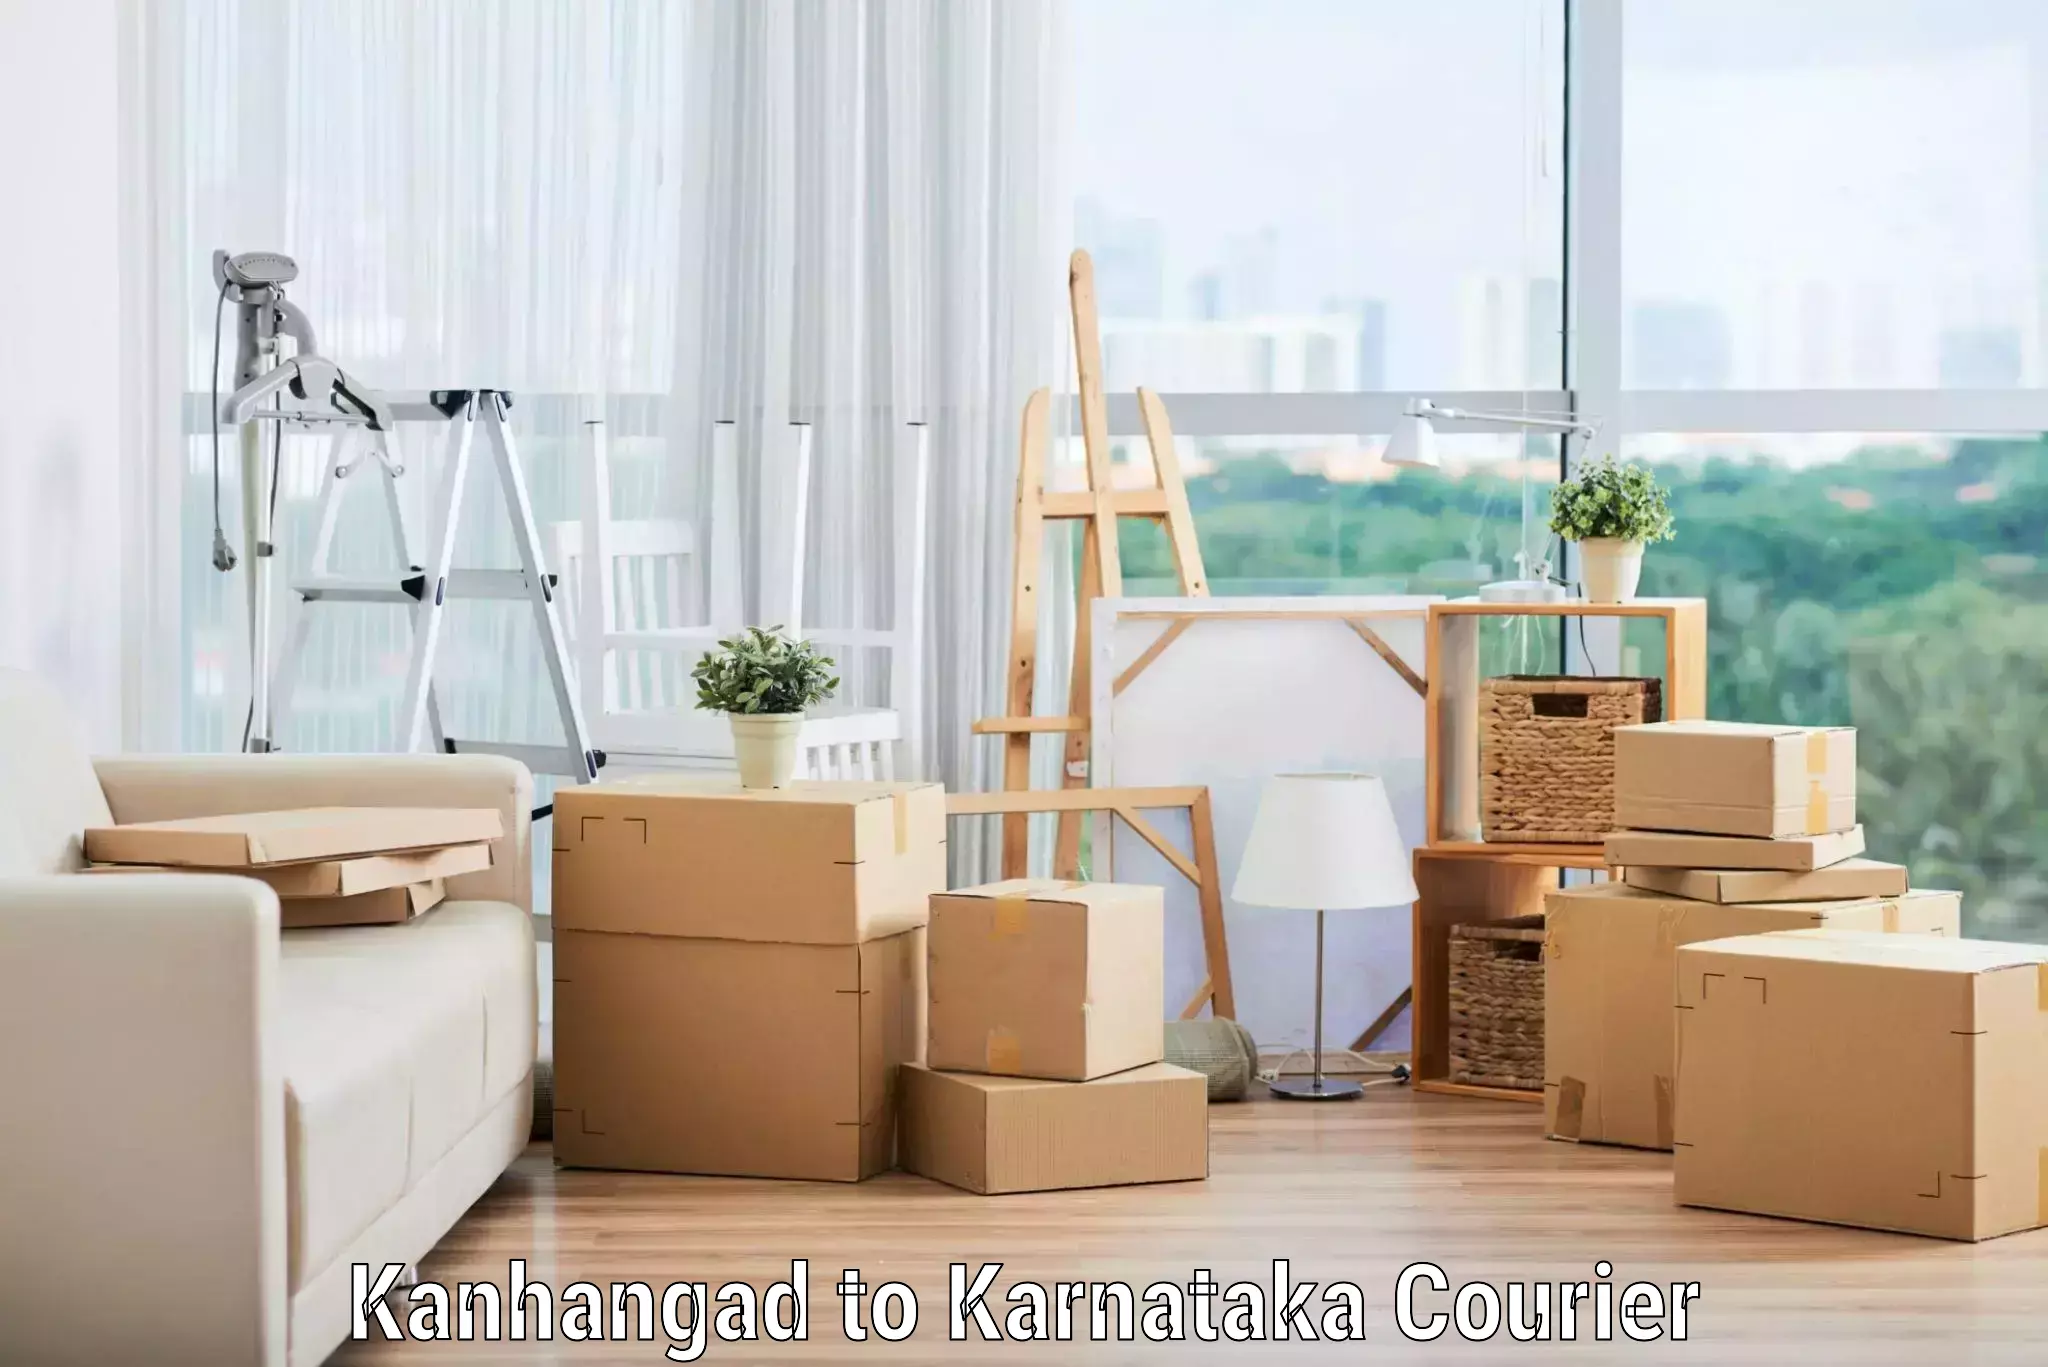 Skilled furniture transporters Kanhangad to Bhatkal